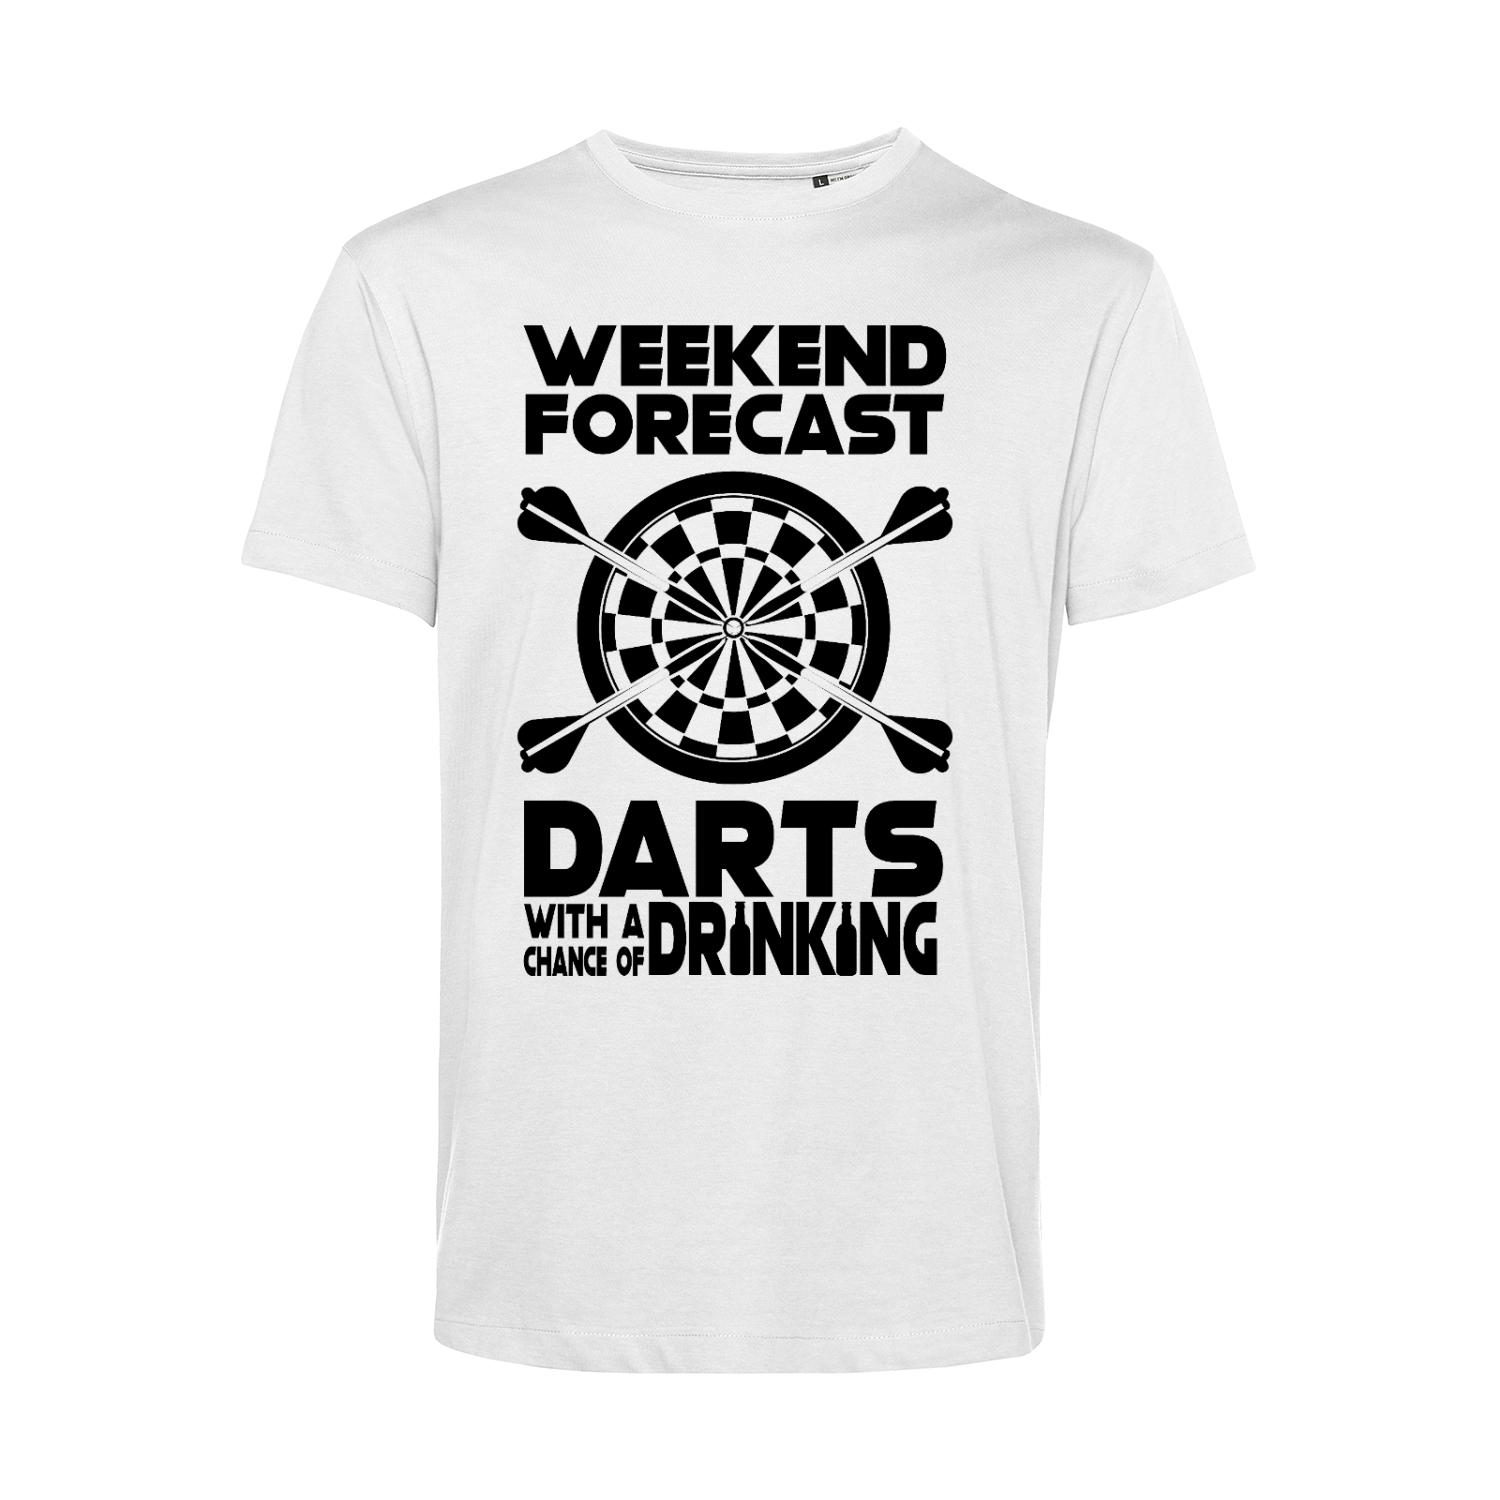 Nachhaltiges T-Shirt Herren Darts Weekend Forecast Darts